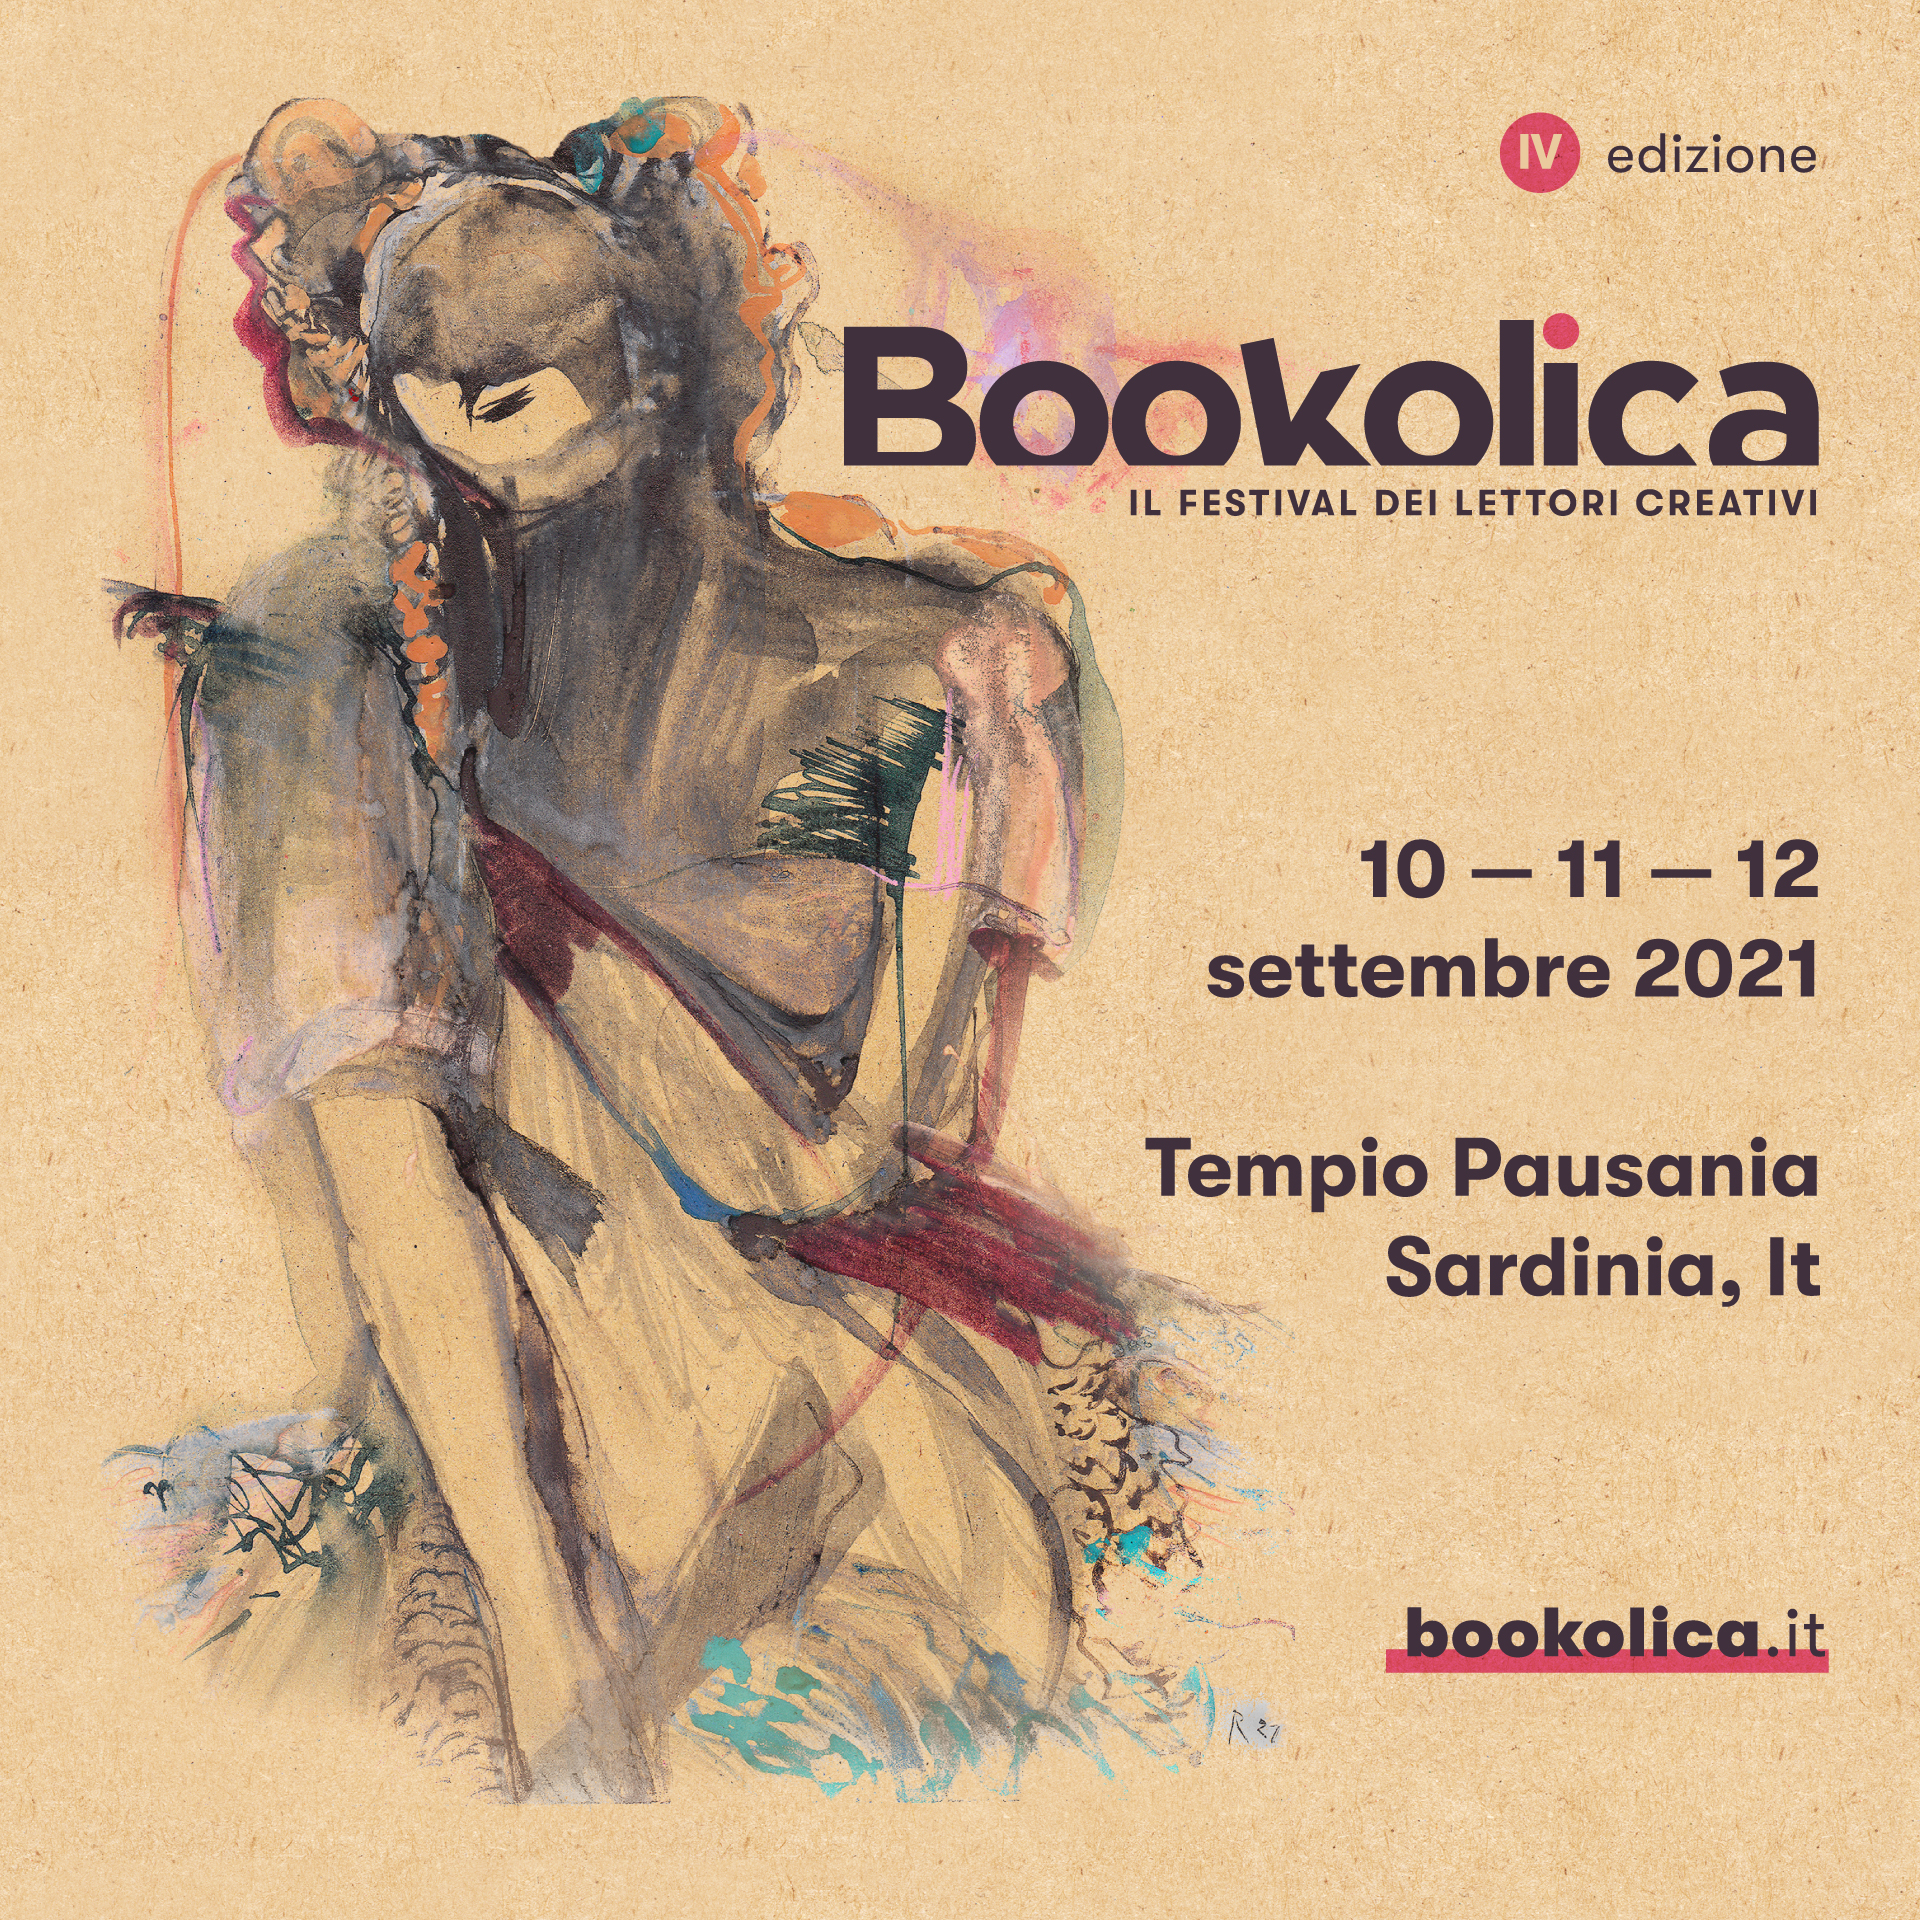 Bookolica-Il Festival dei lettori creativi 2021